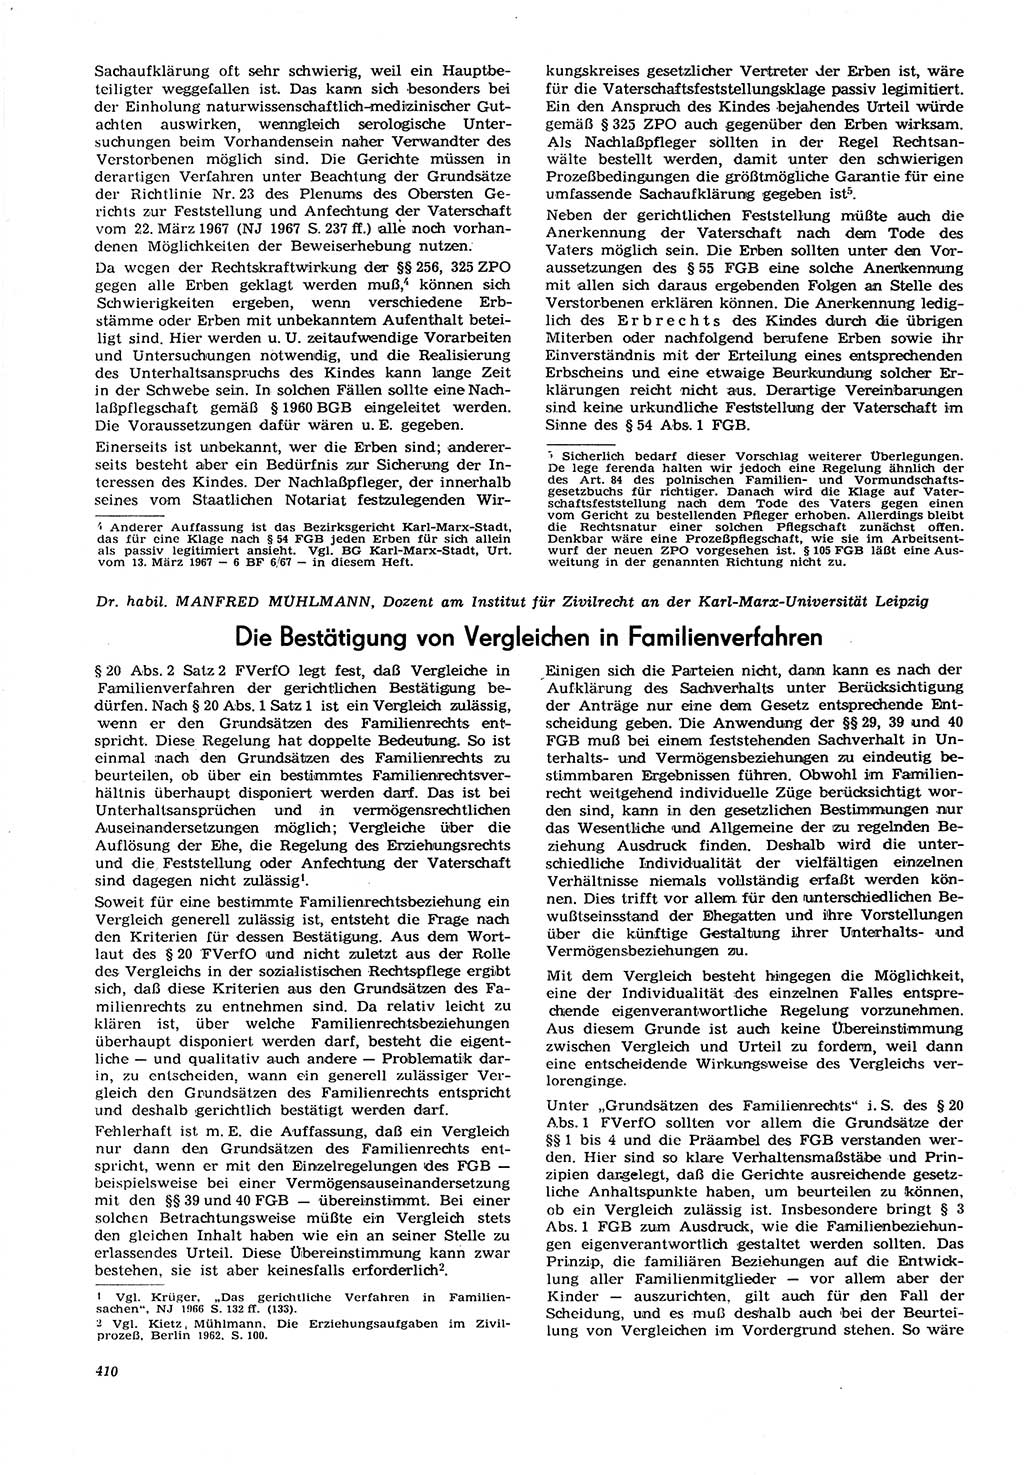 Neue Justiz (NJ), Zeitschrift für Recht und Rechtswissenschaft [Deutsche Demokratische Republik (DDR)], 21. Jahrgang 1967, Seite 410 (NJ DDR 1967, S. 410)